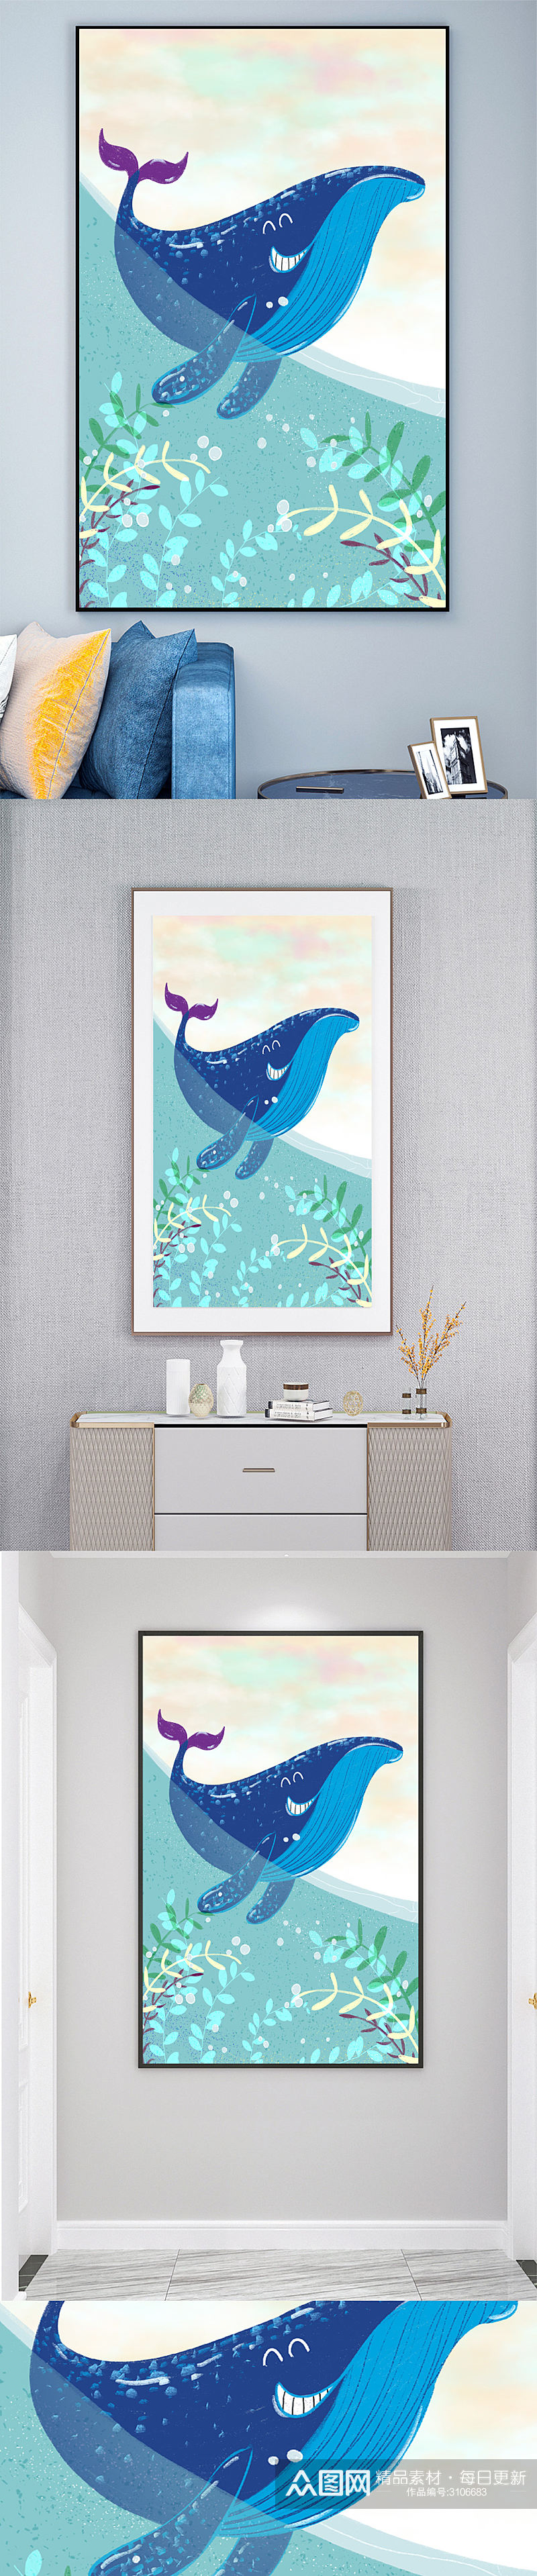 卡通动物鲸鱼装饰画壁画素材